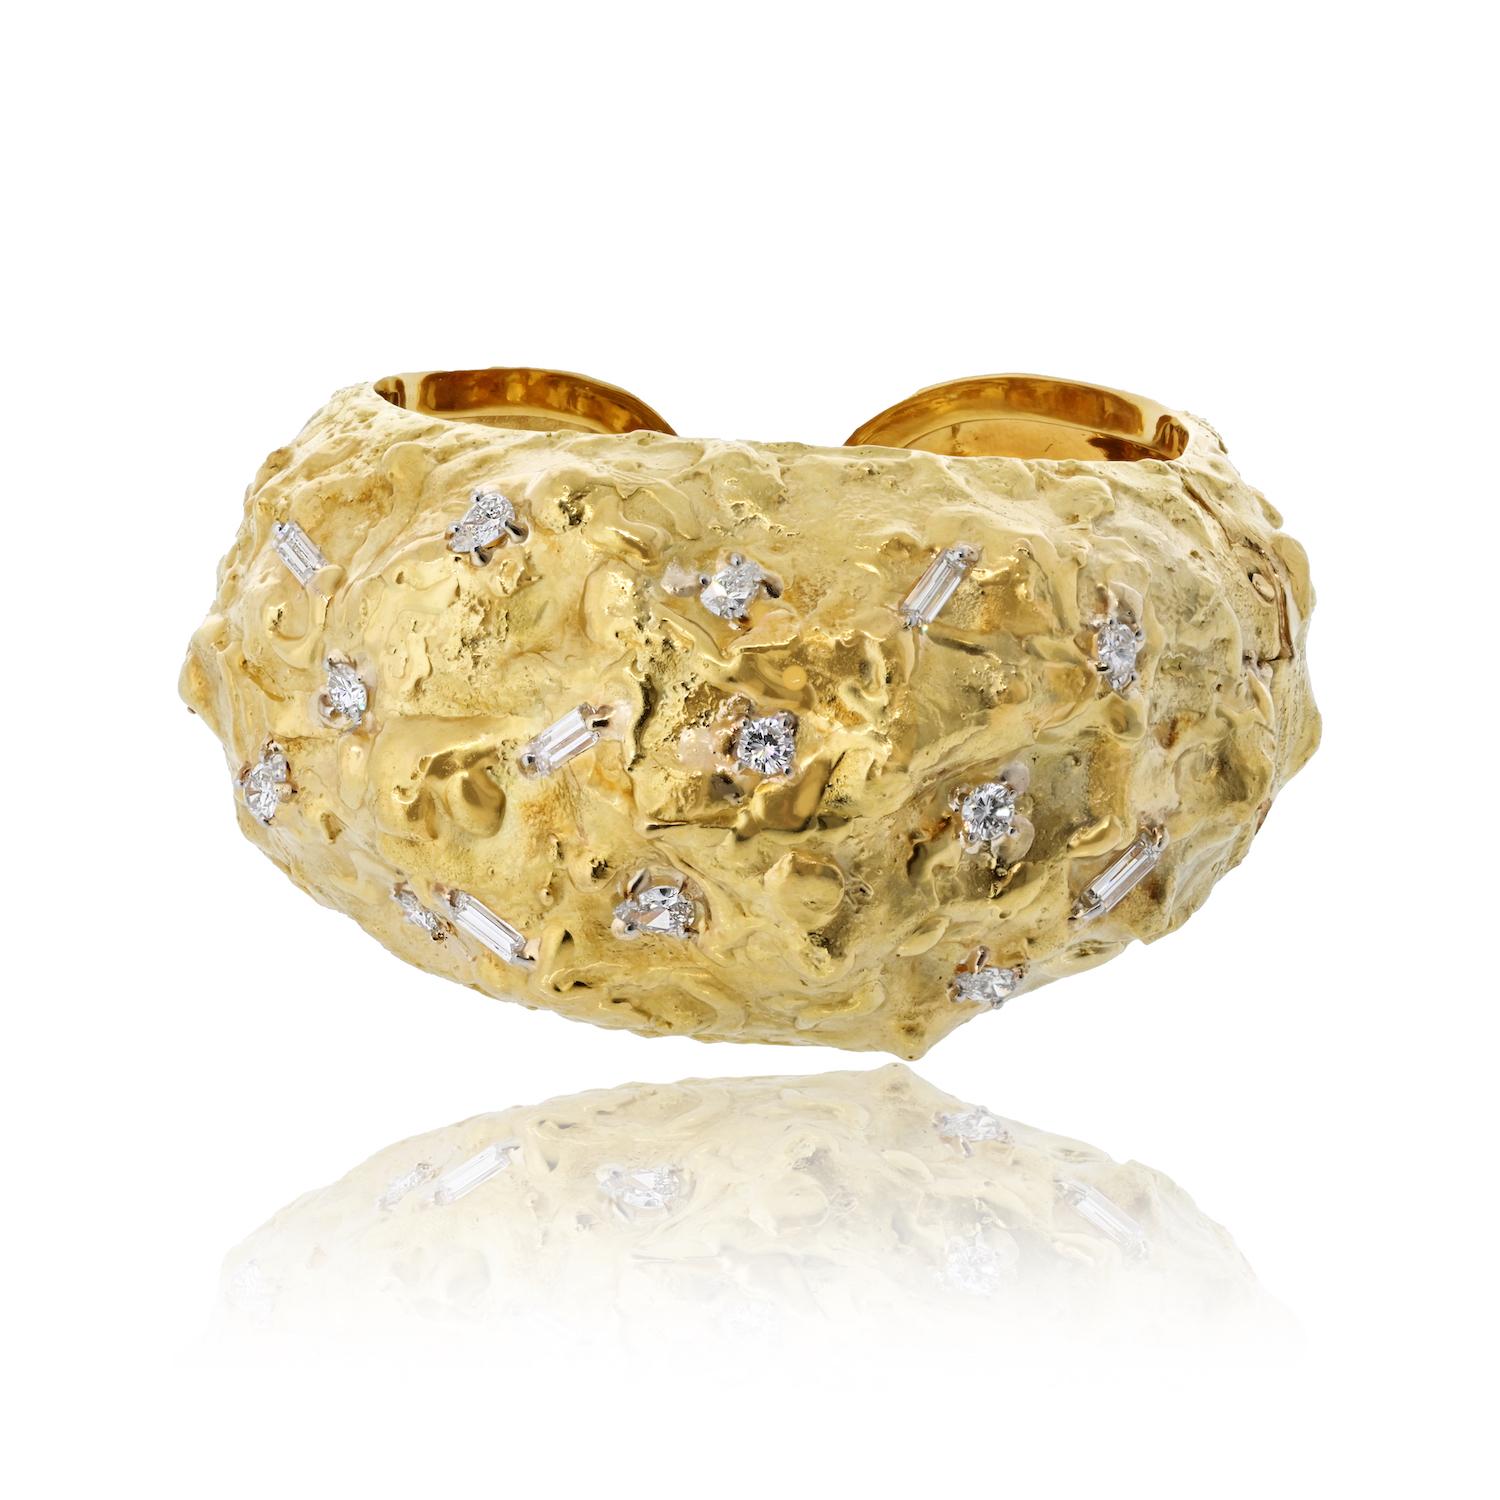 Le bracelet pépite de diamant texturé en platine et or jaune 18 carats de David Webb est un témoignage époustouflant du savoir-faire légendaire de la marque et de ses prouesses en matière de design. 

Ornée d'un éblouissant éventail de diamants